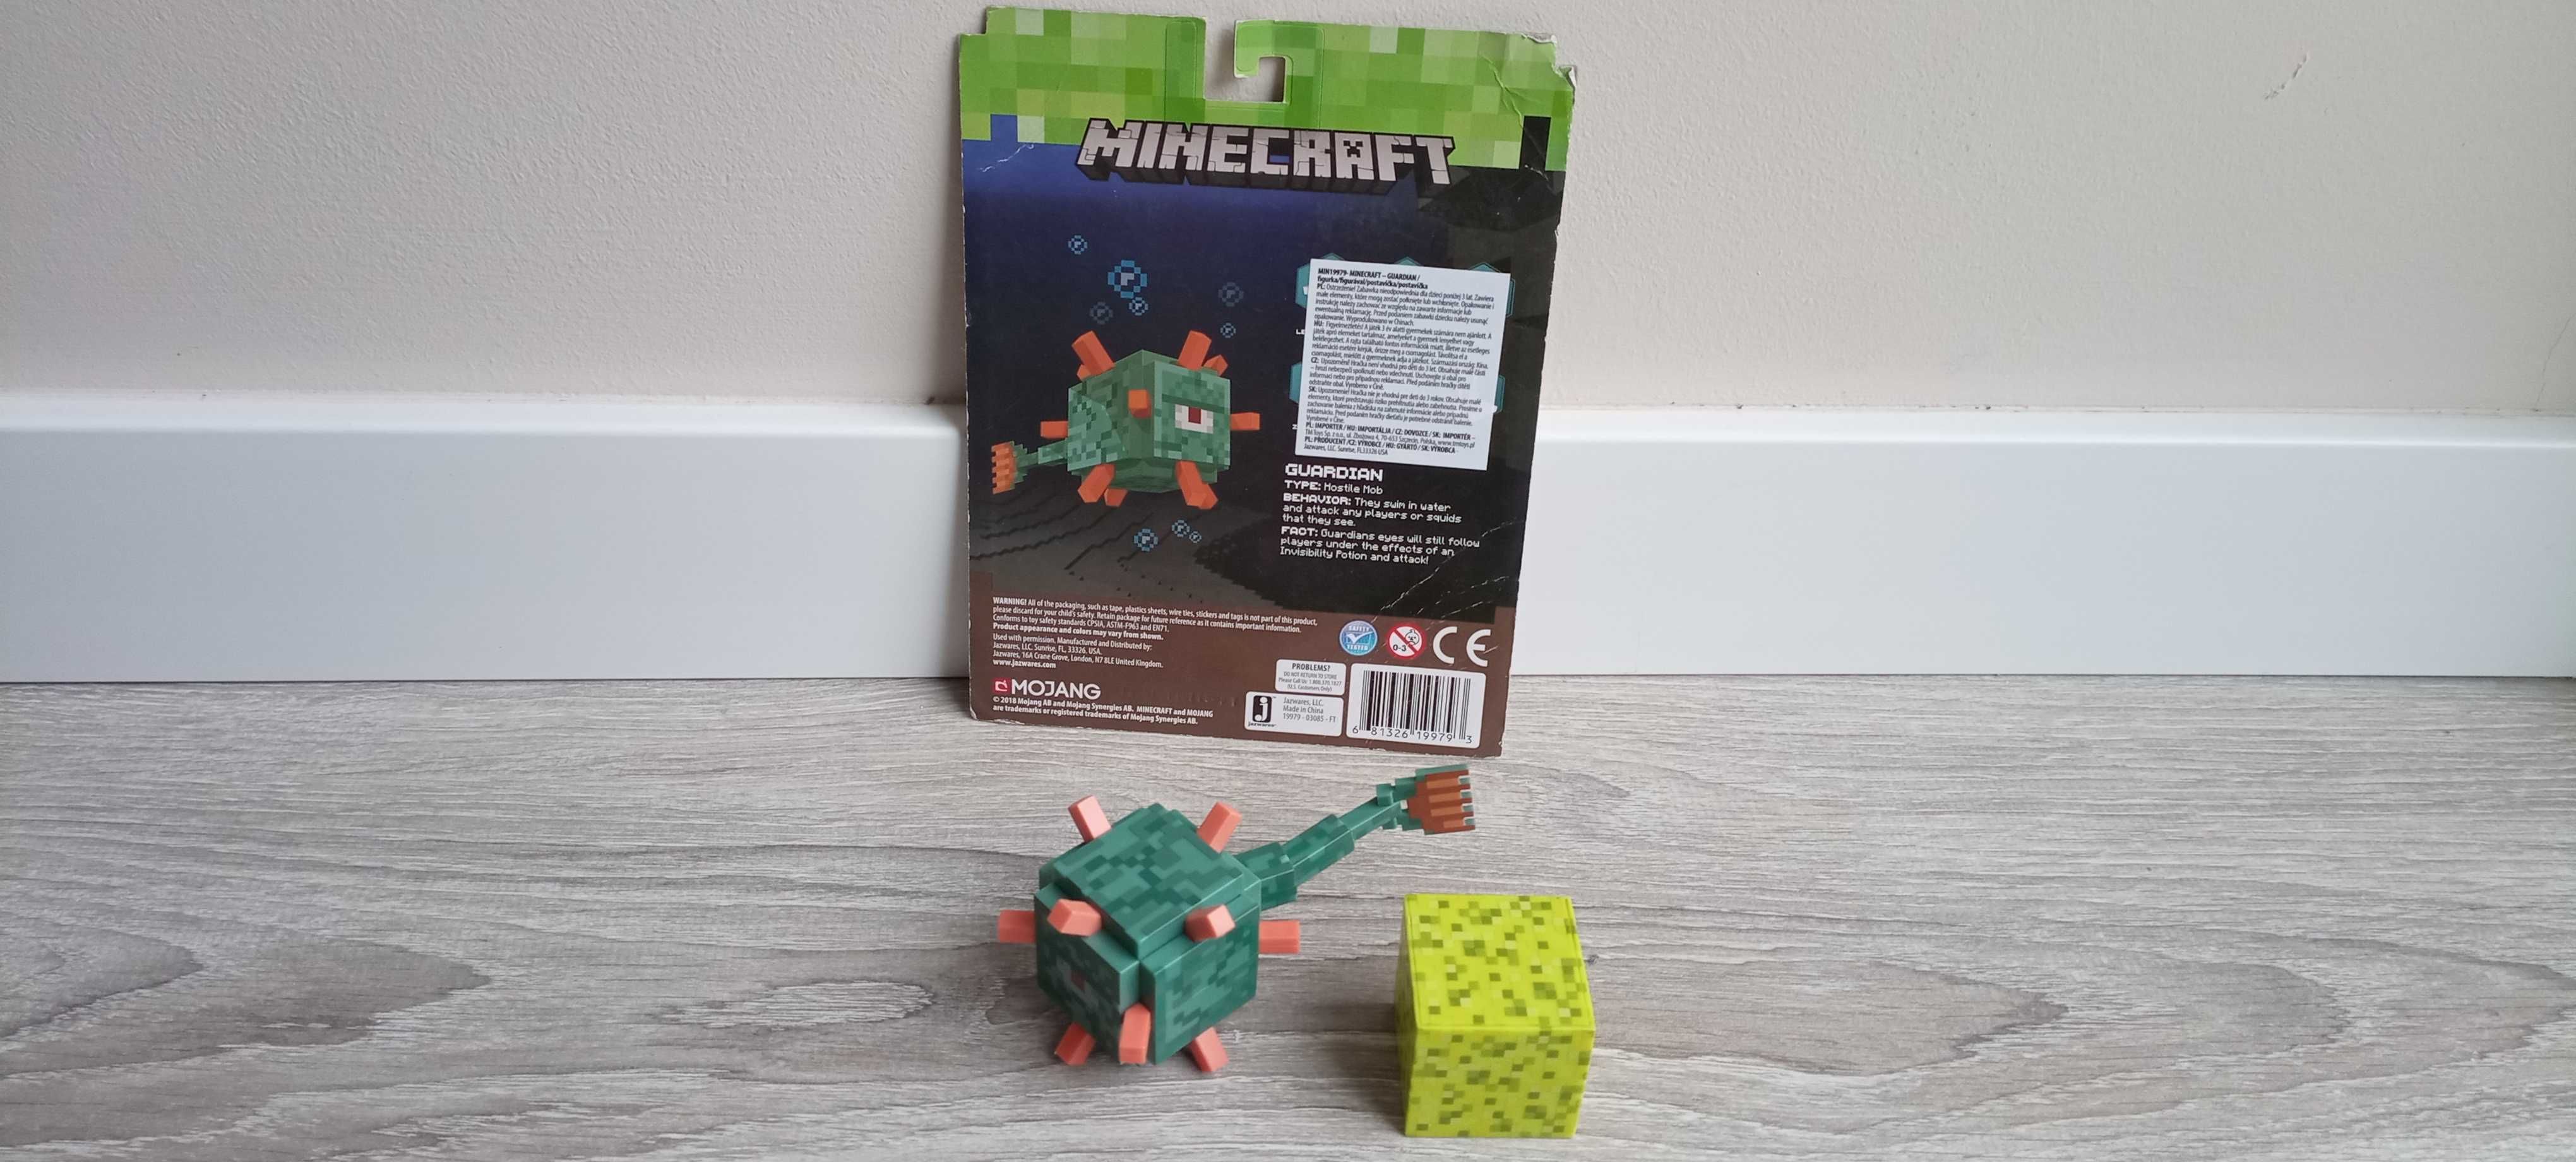 Minecraft Figurka opiekun strażnik Guardian MIN19979 Mojang